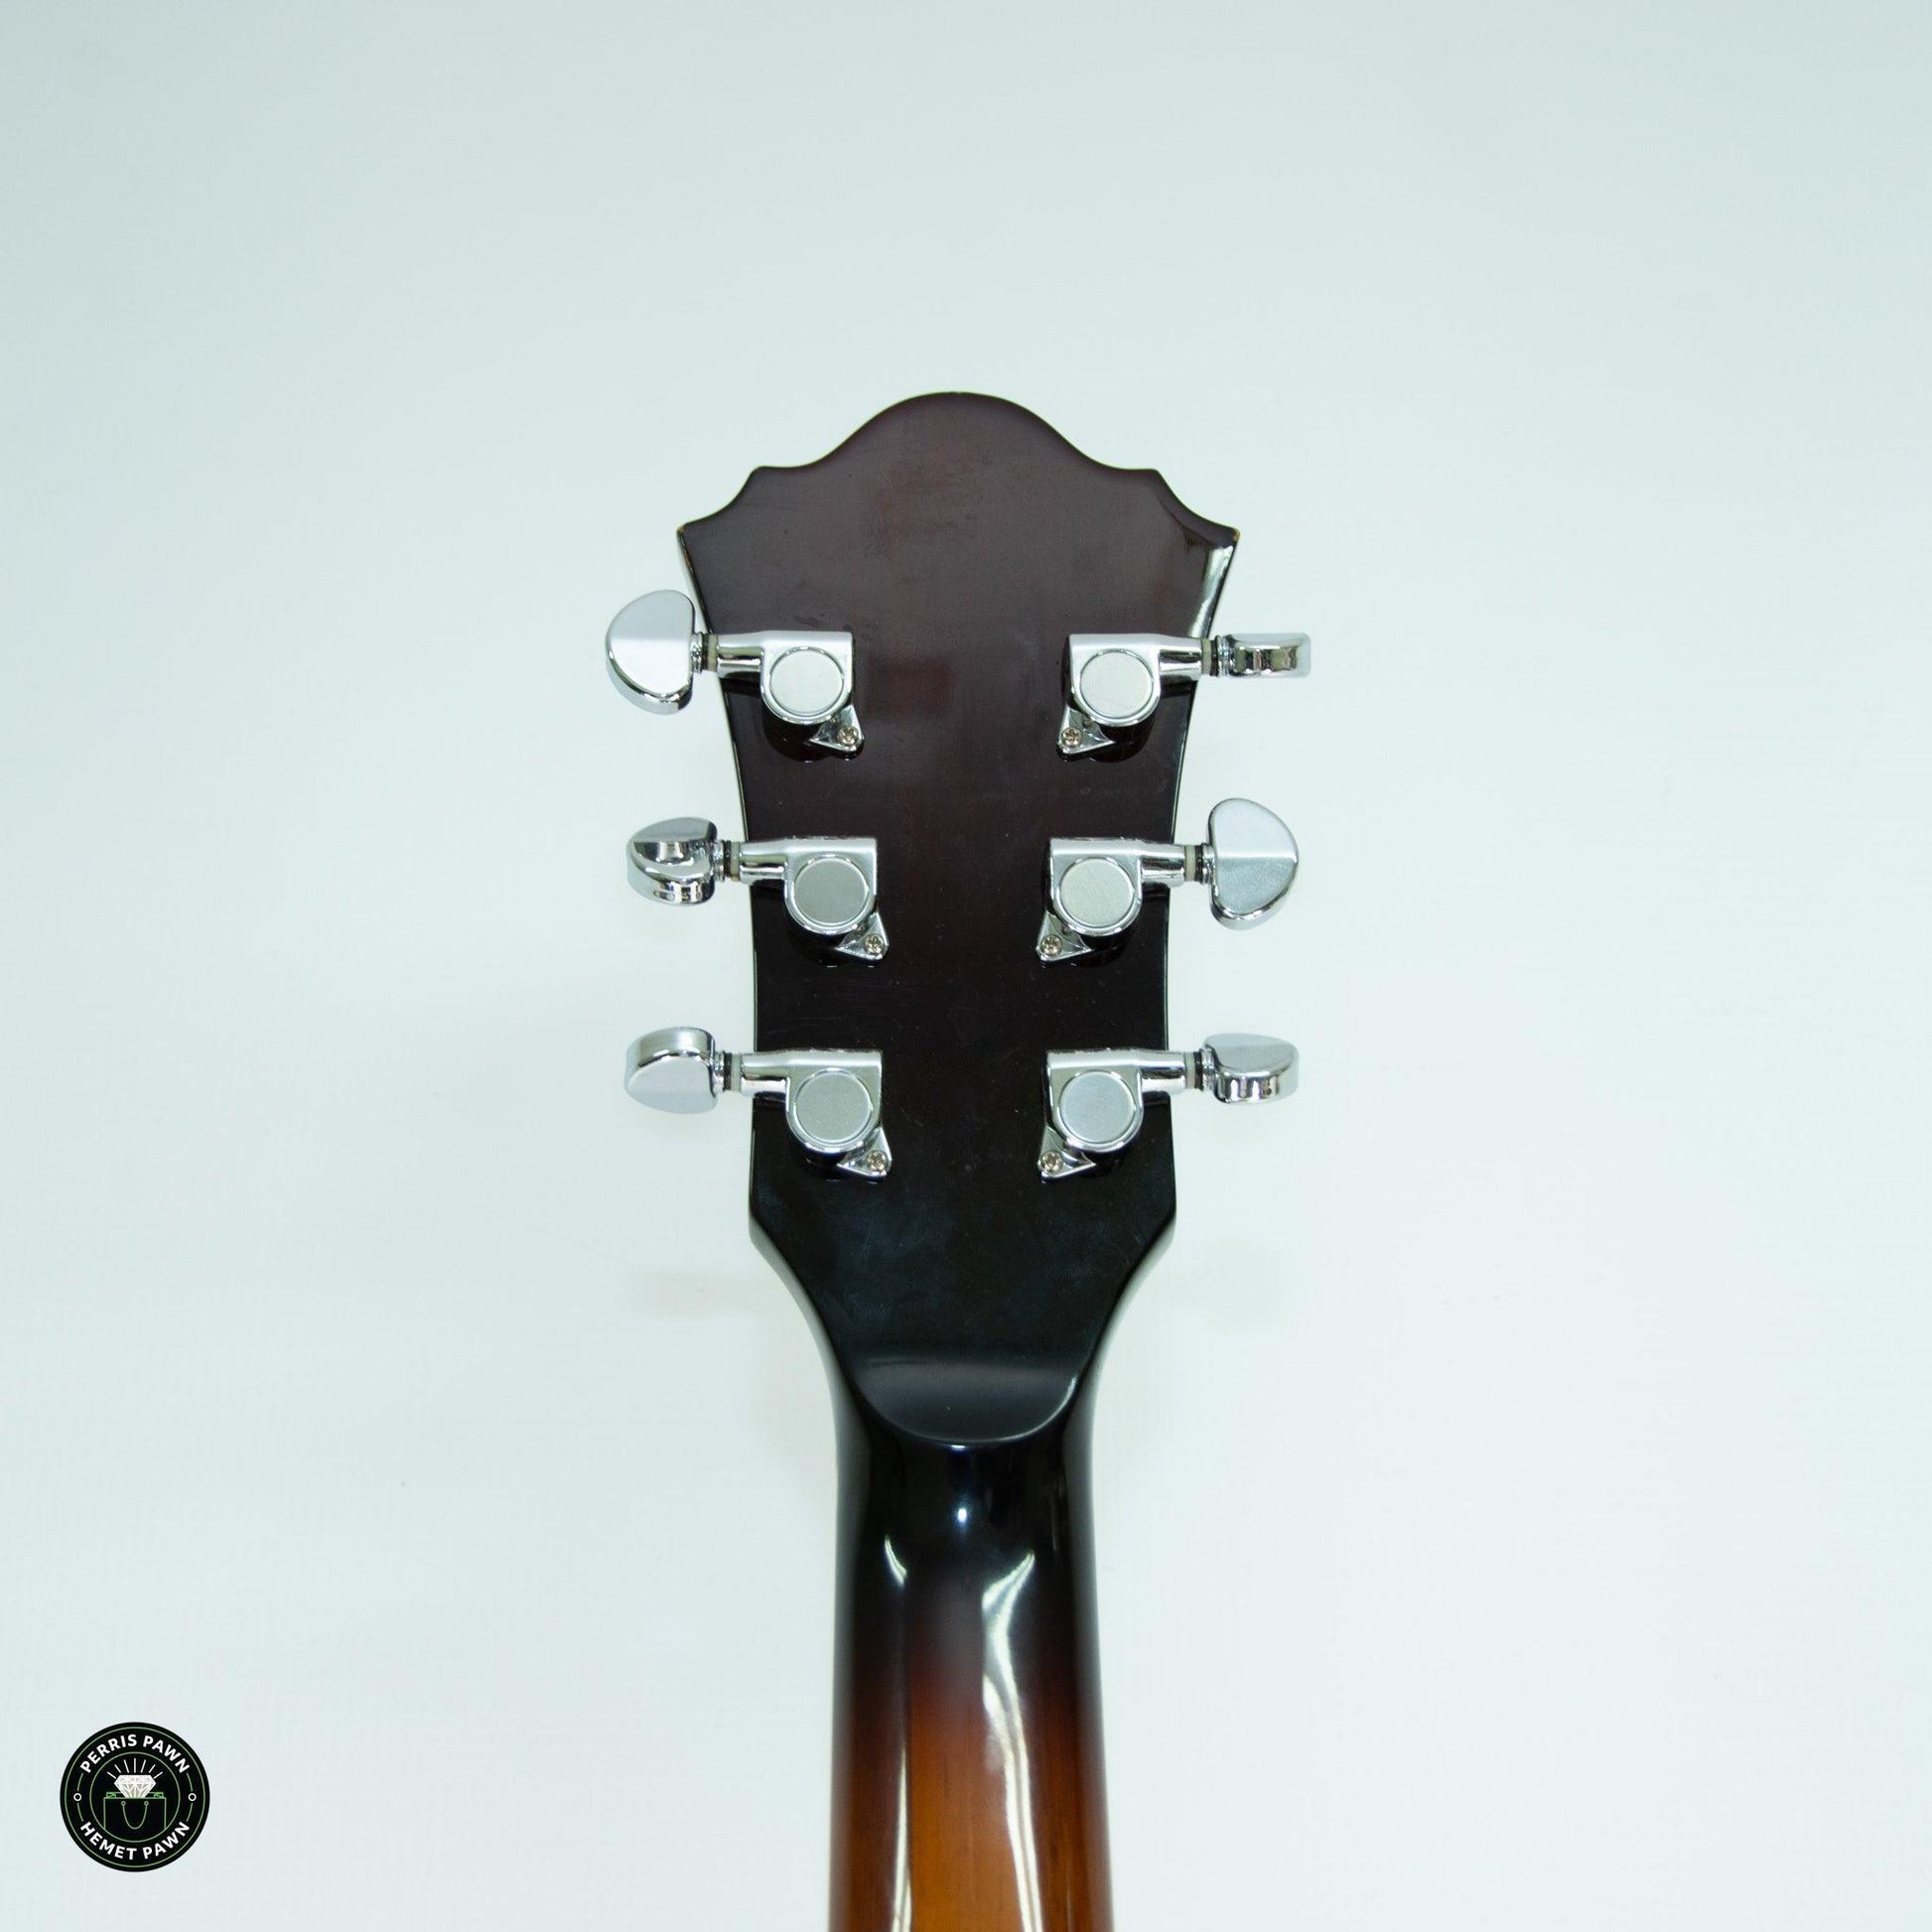 Ibanez Artcore Holllow Body Guitarra Electrica 6 Cuerdas - en Estuche Duro - ipawnishop.com